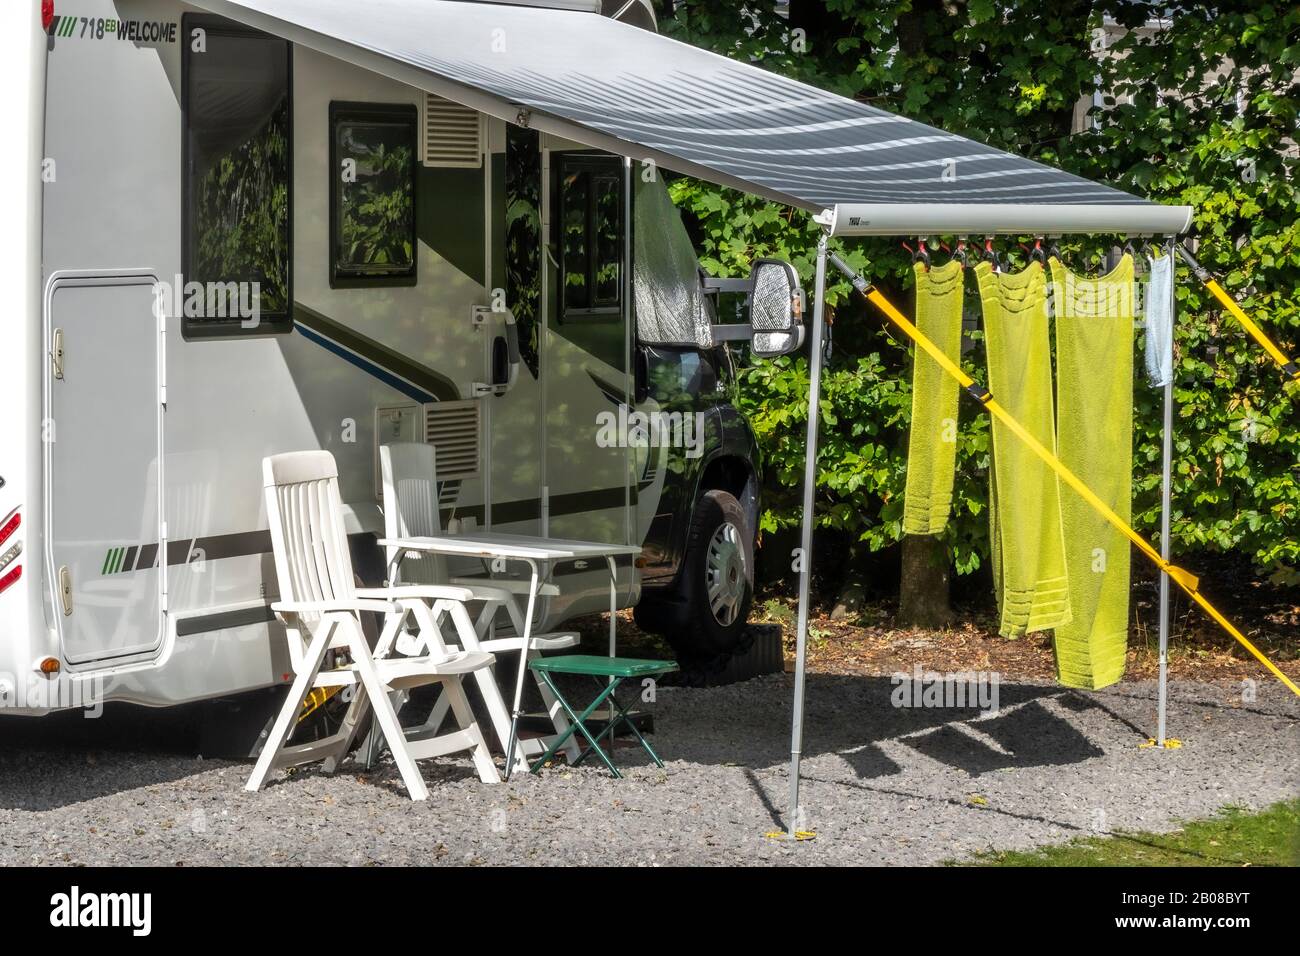 Drei grüne Handtücher hängen in der warmen Sonne, vom Sonnenschein/Sonnenschutz eines Wohnwagens, auf einem Zeltplatz ohne Leute herum zum Trocknen. Engand, Großbritannien. Stockfoto